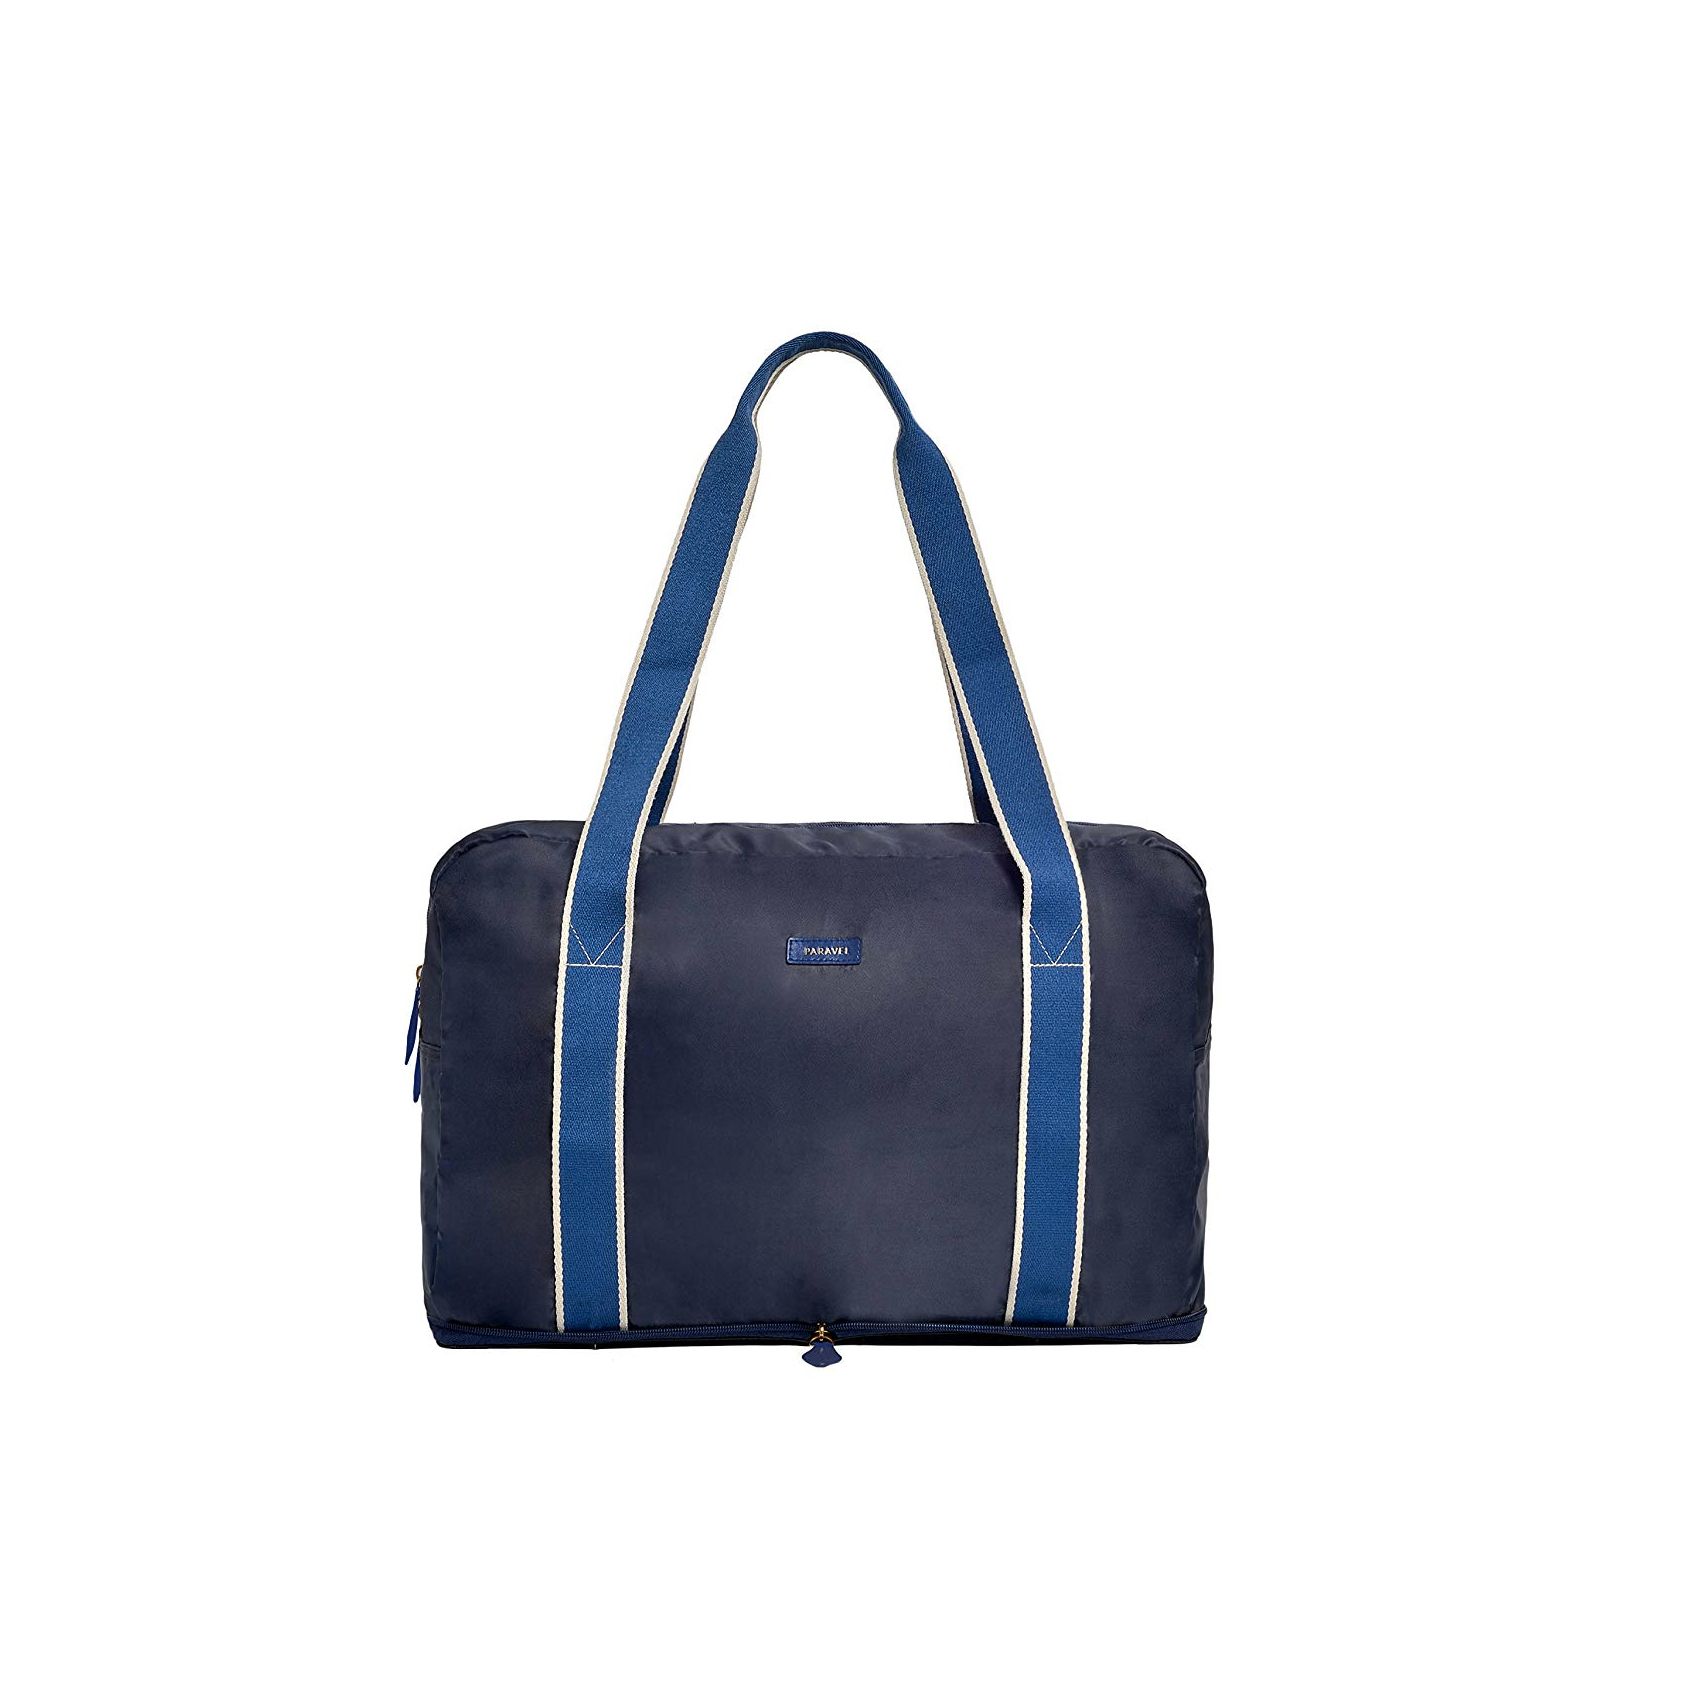 Travel Bag Tassen & portemonnees Bagage & Reizen Weekendtassen Heaux Bag Tote Overnight Bag Hoe Bag Gift for Her Weekend Bag Carry-on Bag | Ho Bag Funny Tote Bag Gym Bag 